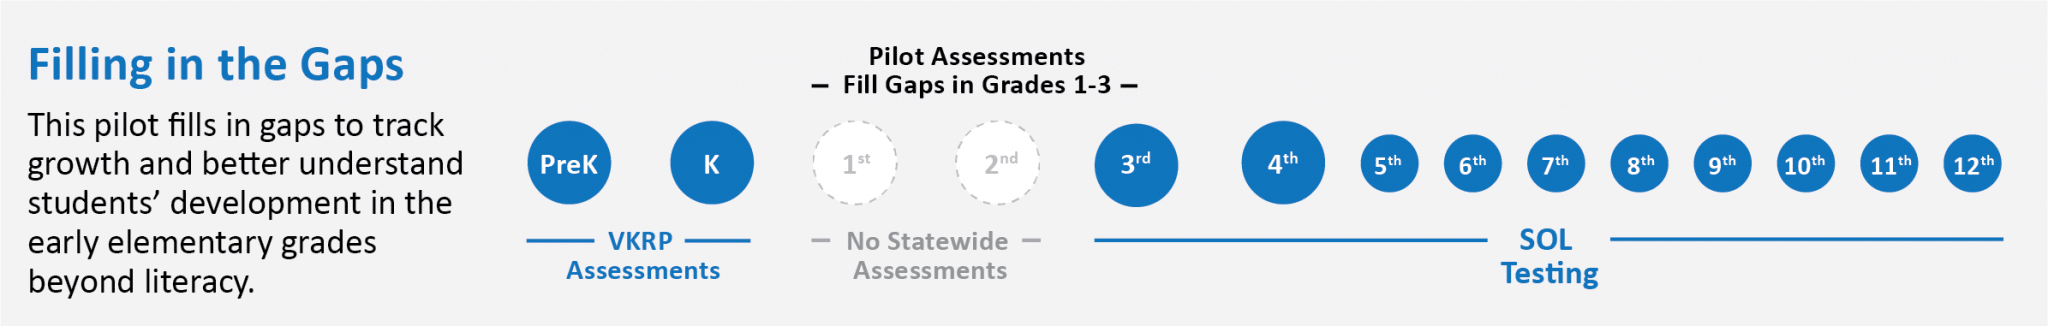 Illustration of Grades 1-3 Pilot